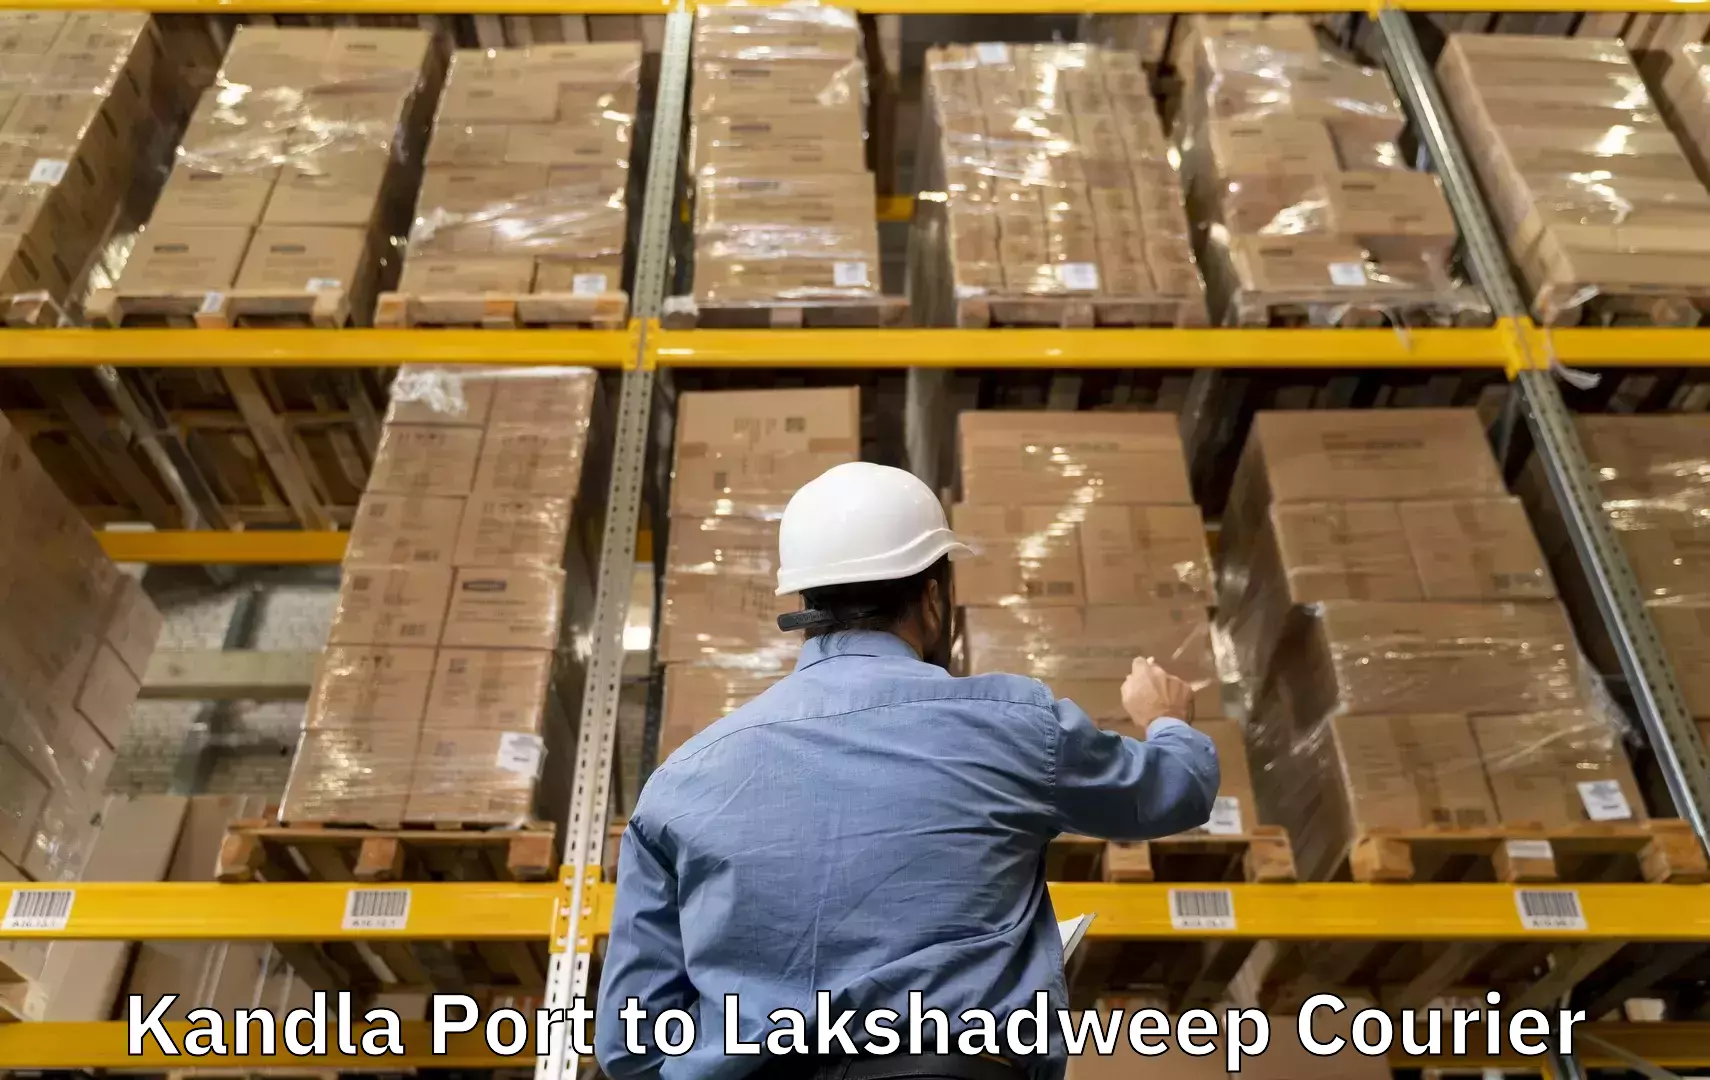 Luggage transfer service Kandla Port to Lakshadweep